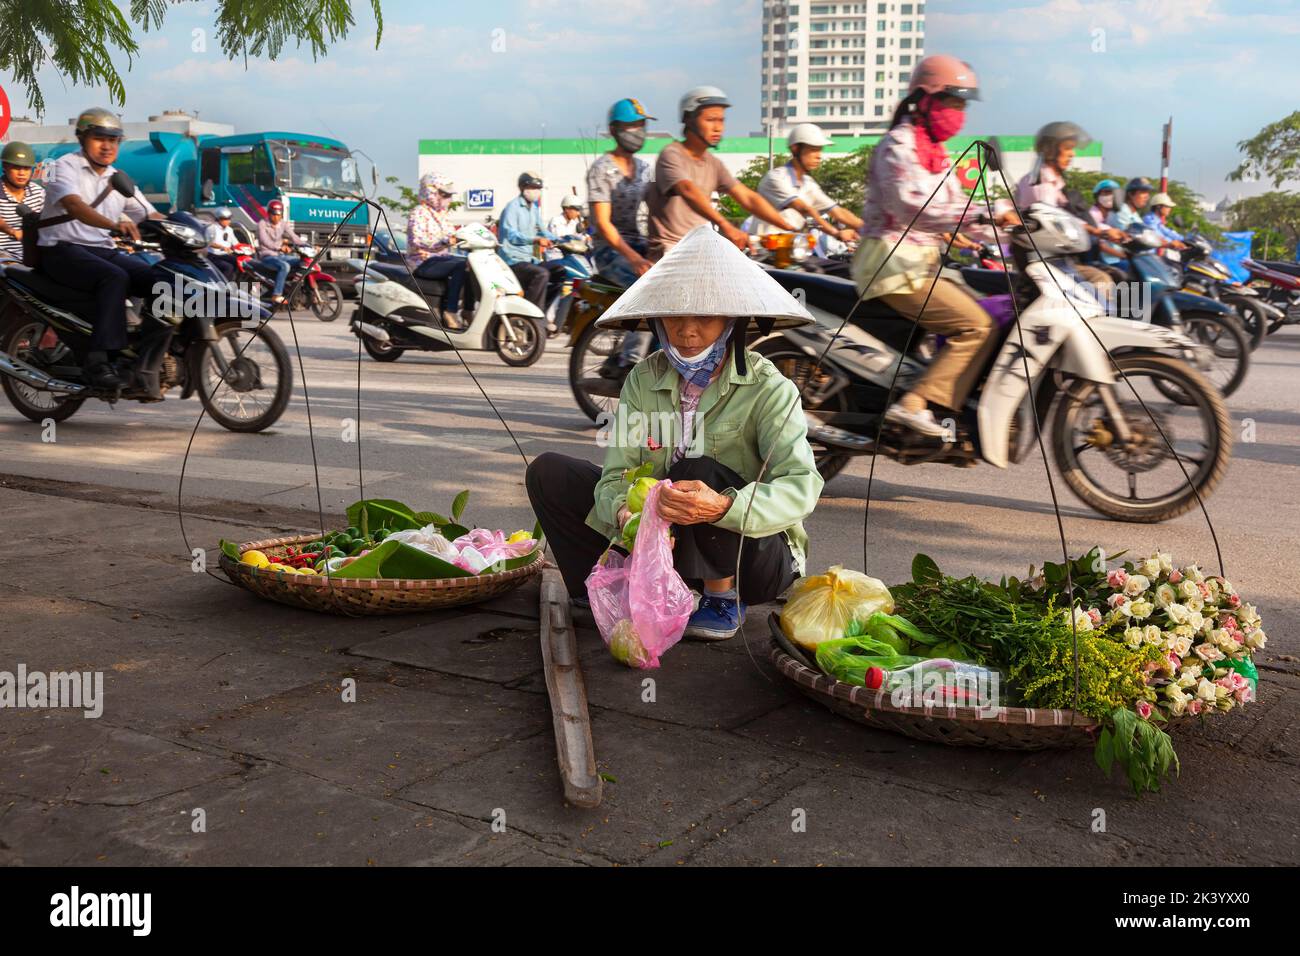 Vendedor ambulante vietnamita usando sombrero de bambú vendiendo comida de pannier en la calle, Hai Phong, Vietnam Foto de stock